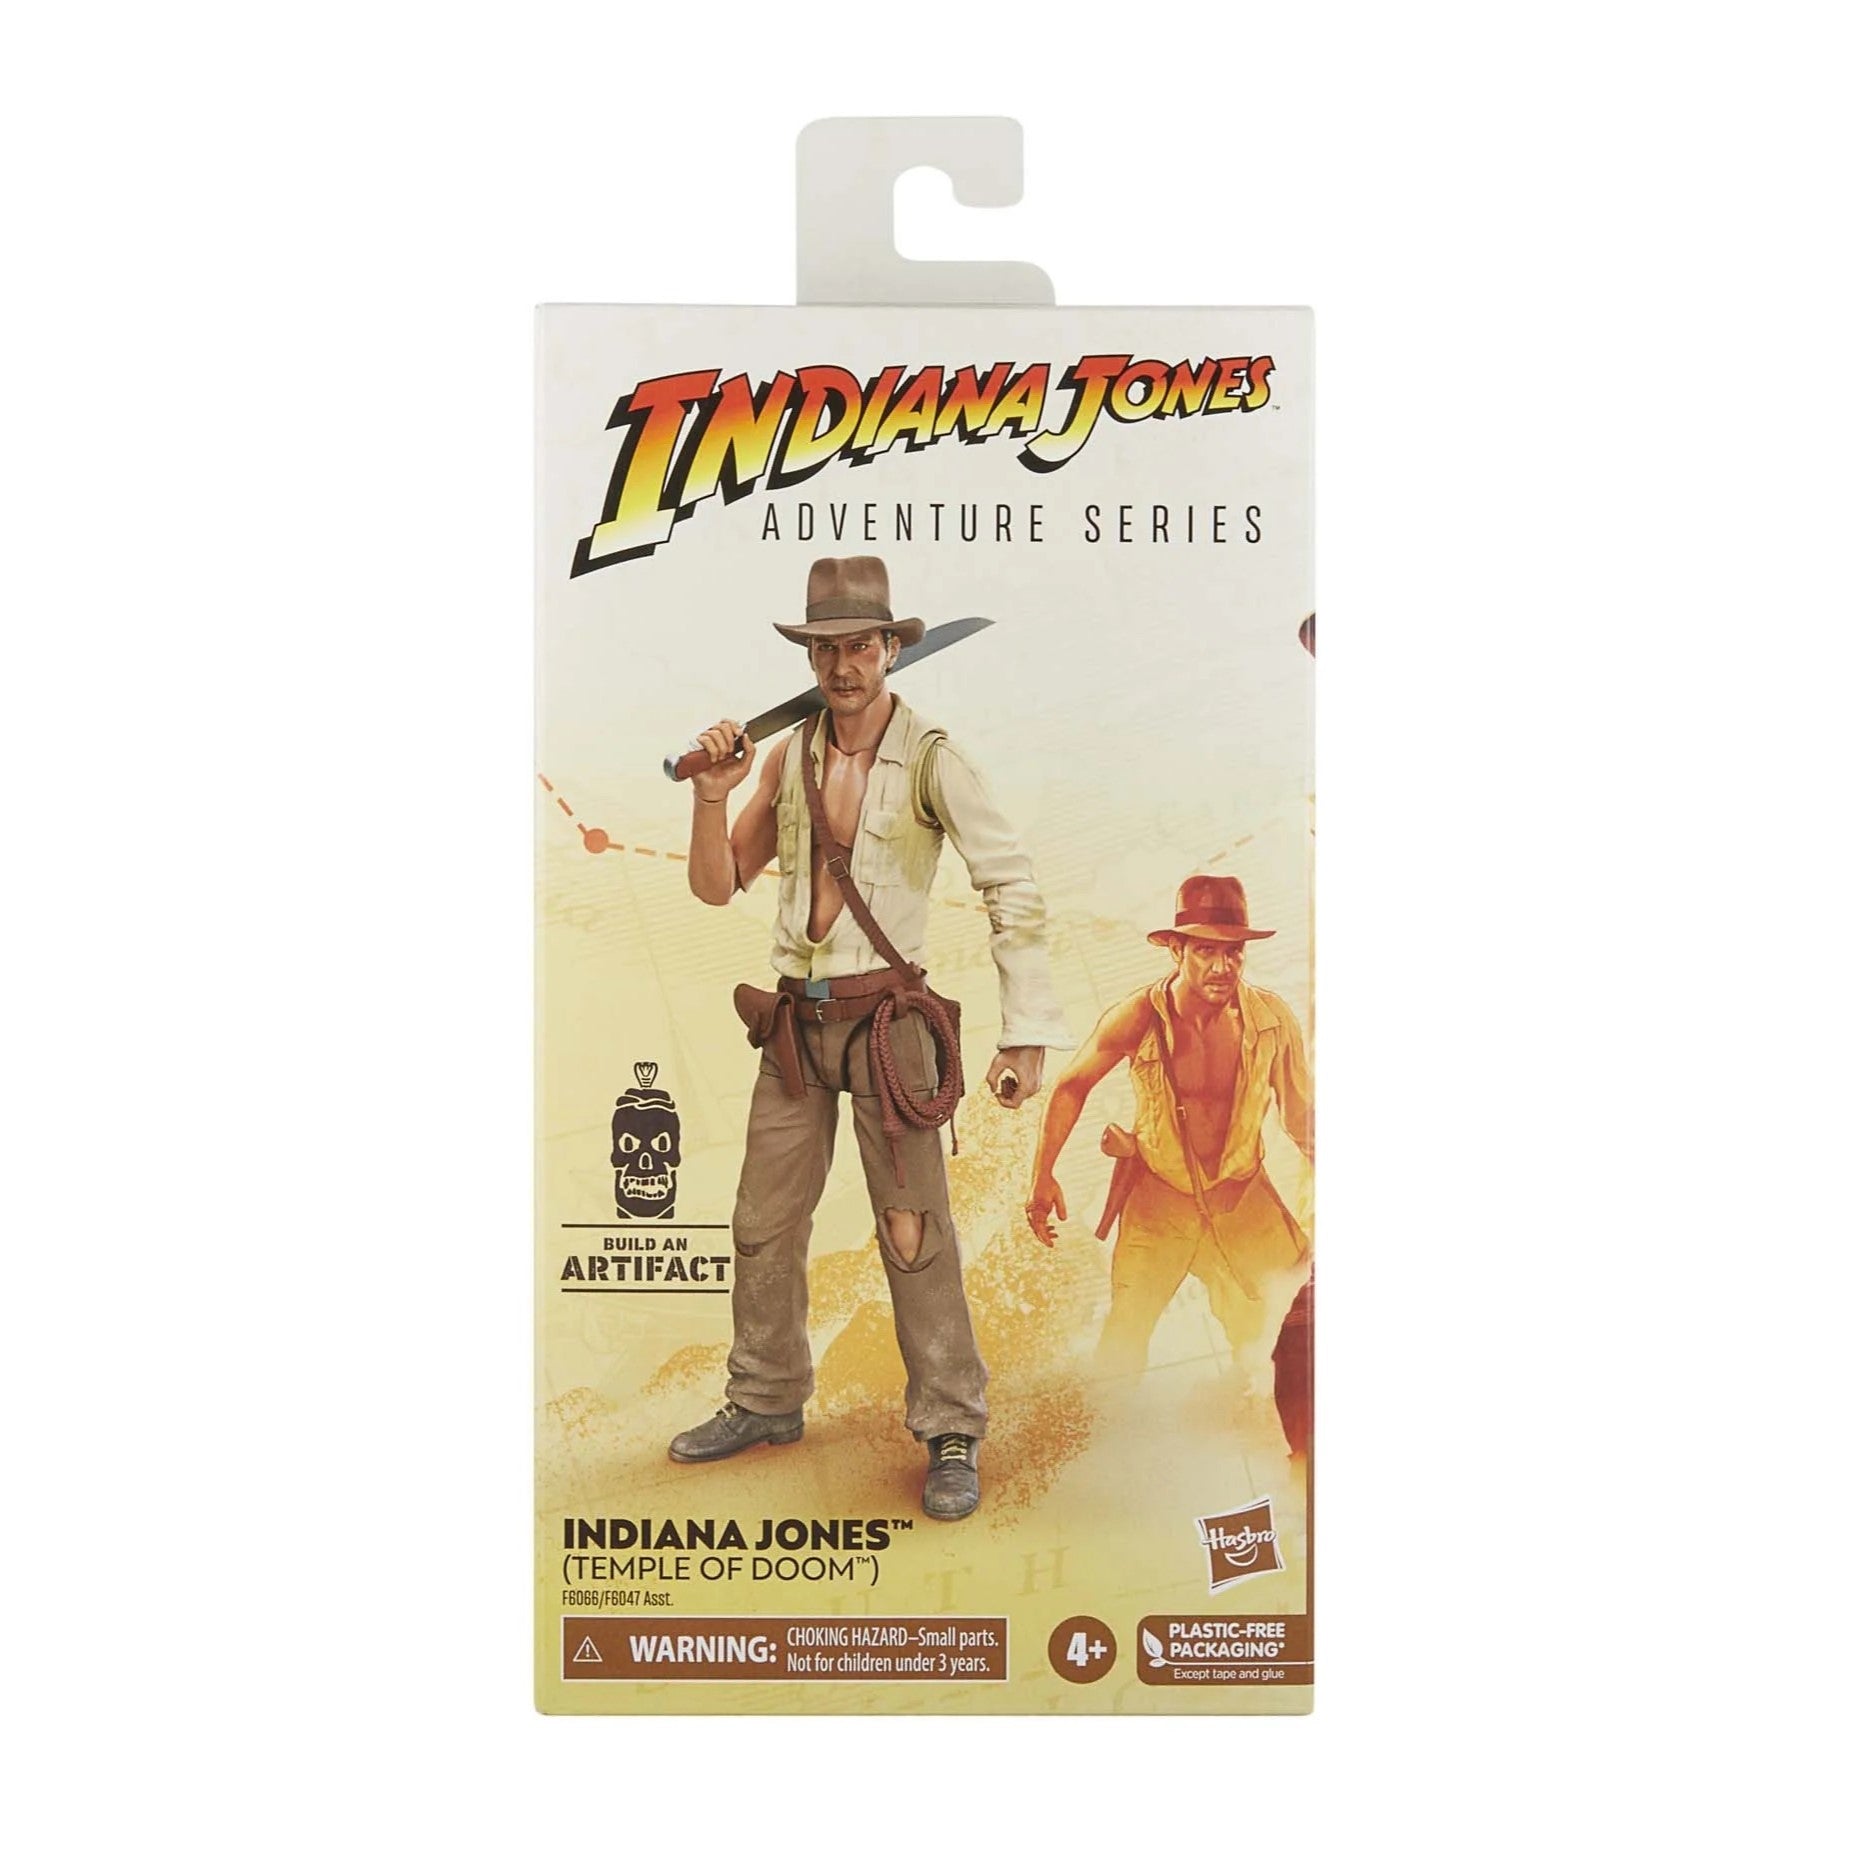 Indiana Jones Adventure Series Temple of Doom Indiana Jones 6" Figure